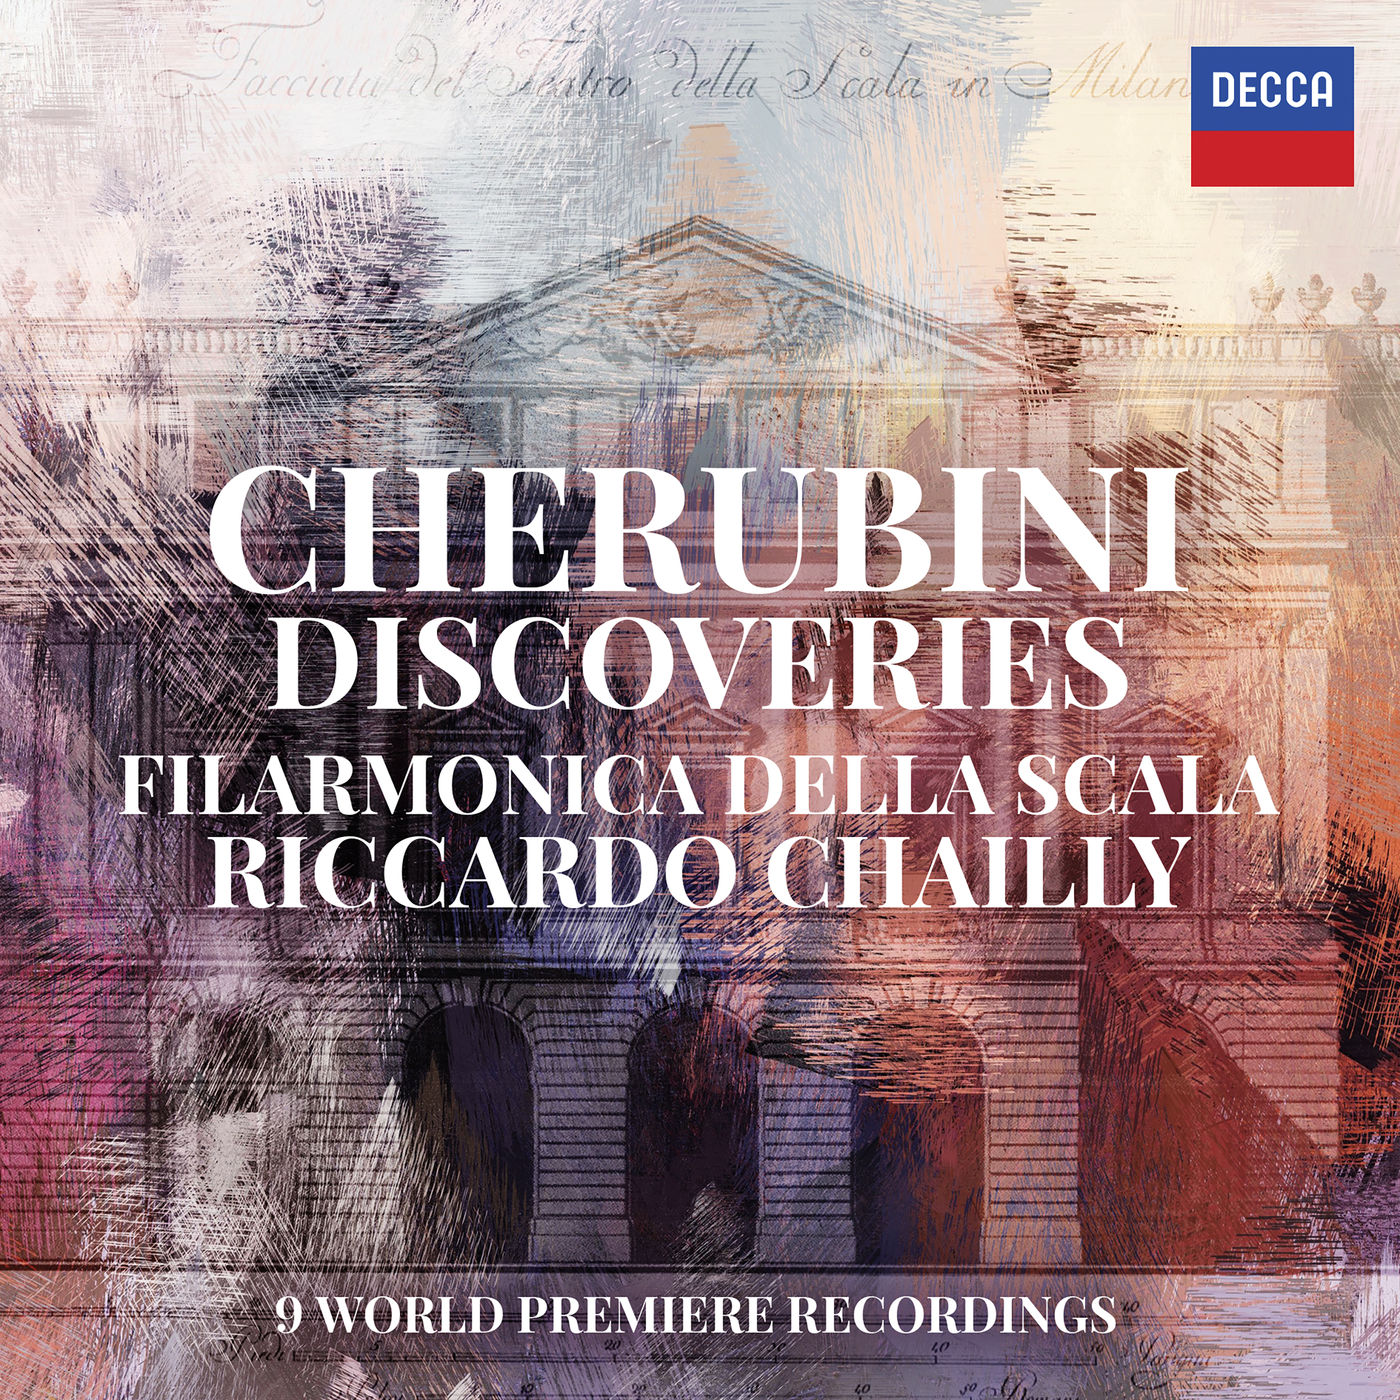 Orchestra Filarmonica della Scala & Riccardo Chailly - Cherubini Discoveries (2016/2020) [FLAC 24bit/96kHz]